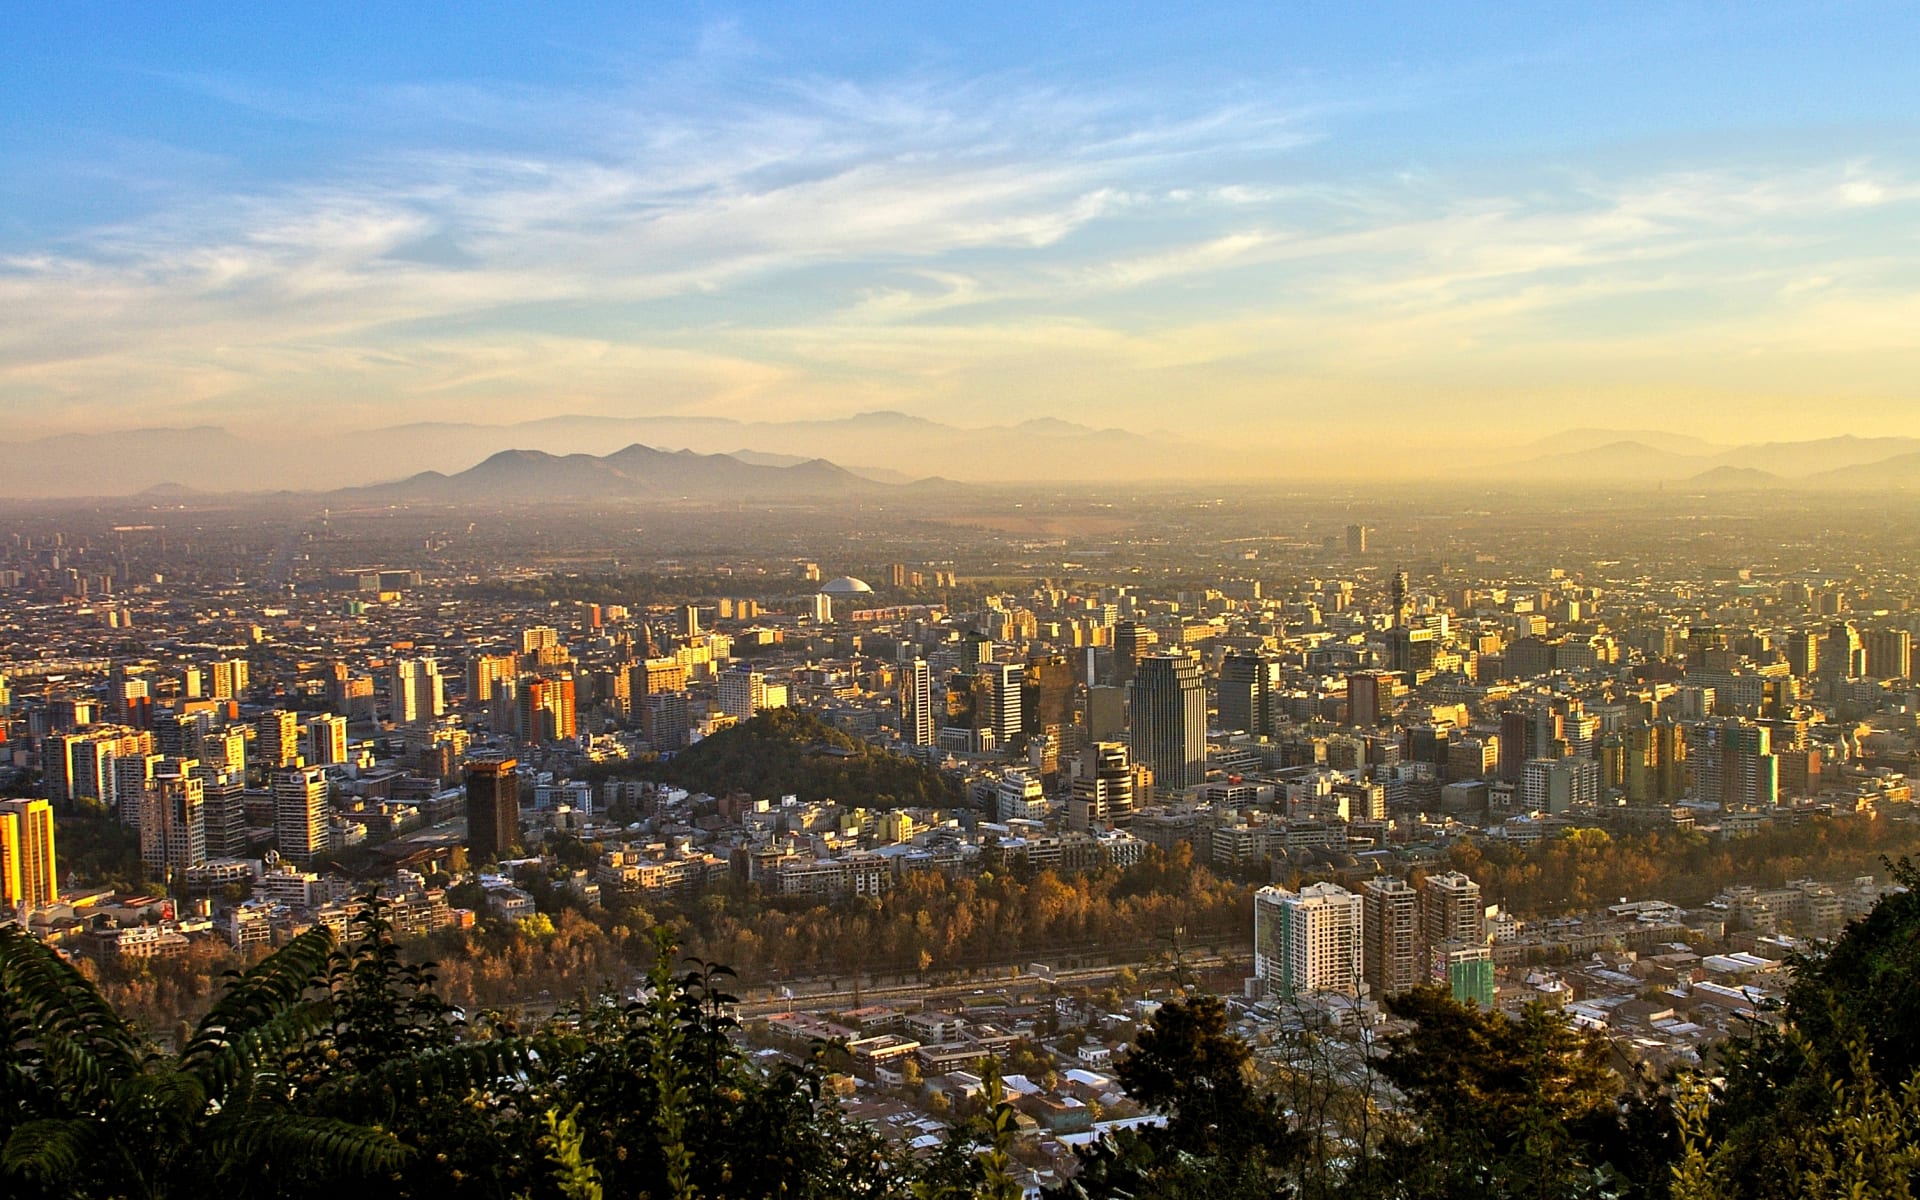 View of the city of Santiago de Chile.